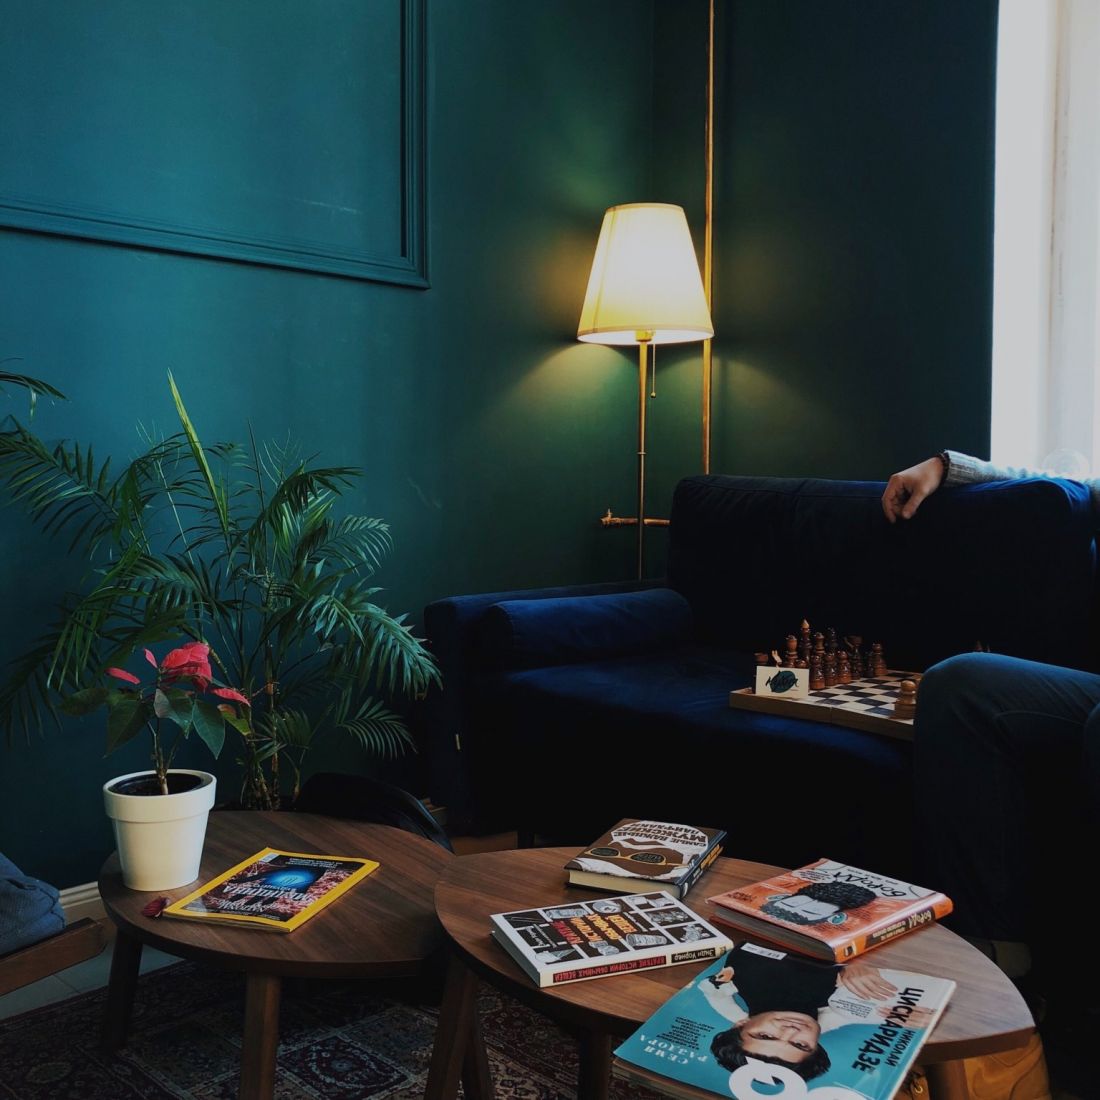 hình ảnh góc phòng khách với tường sơn màu xanh nước biển đậm, ghế sofa,  chậu cây trạng nguyên để trên bàn trà hình tròn, cây xanh trang trí